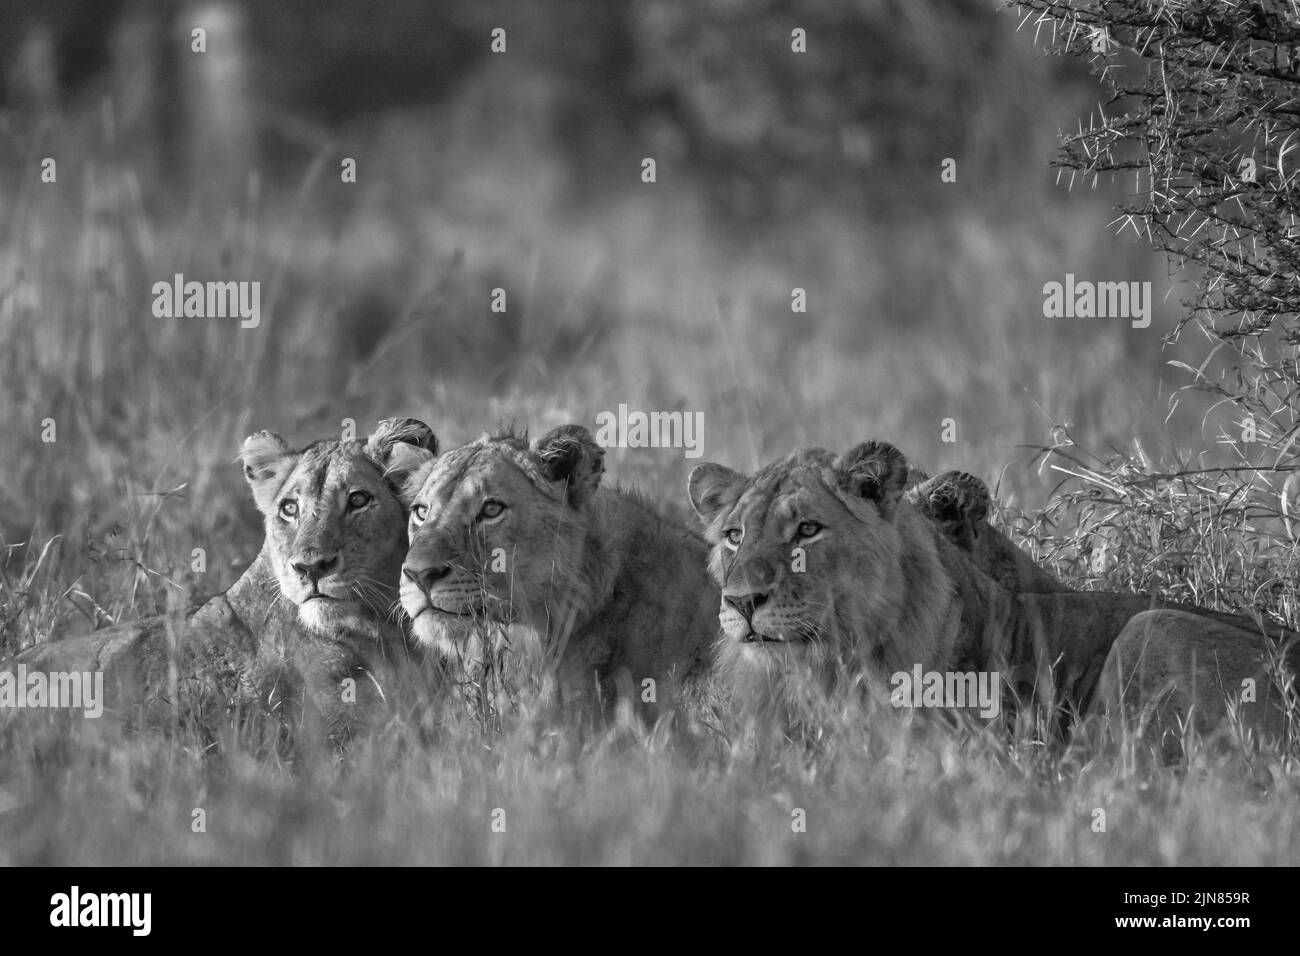 Imagen en blanco y negro de los leones jóvenes que yacen en espera en la primera etapa Foto de stock